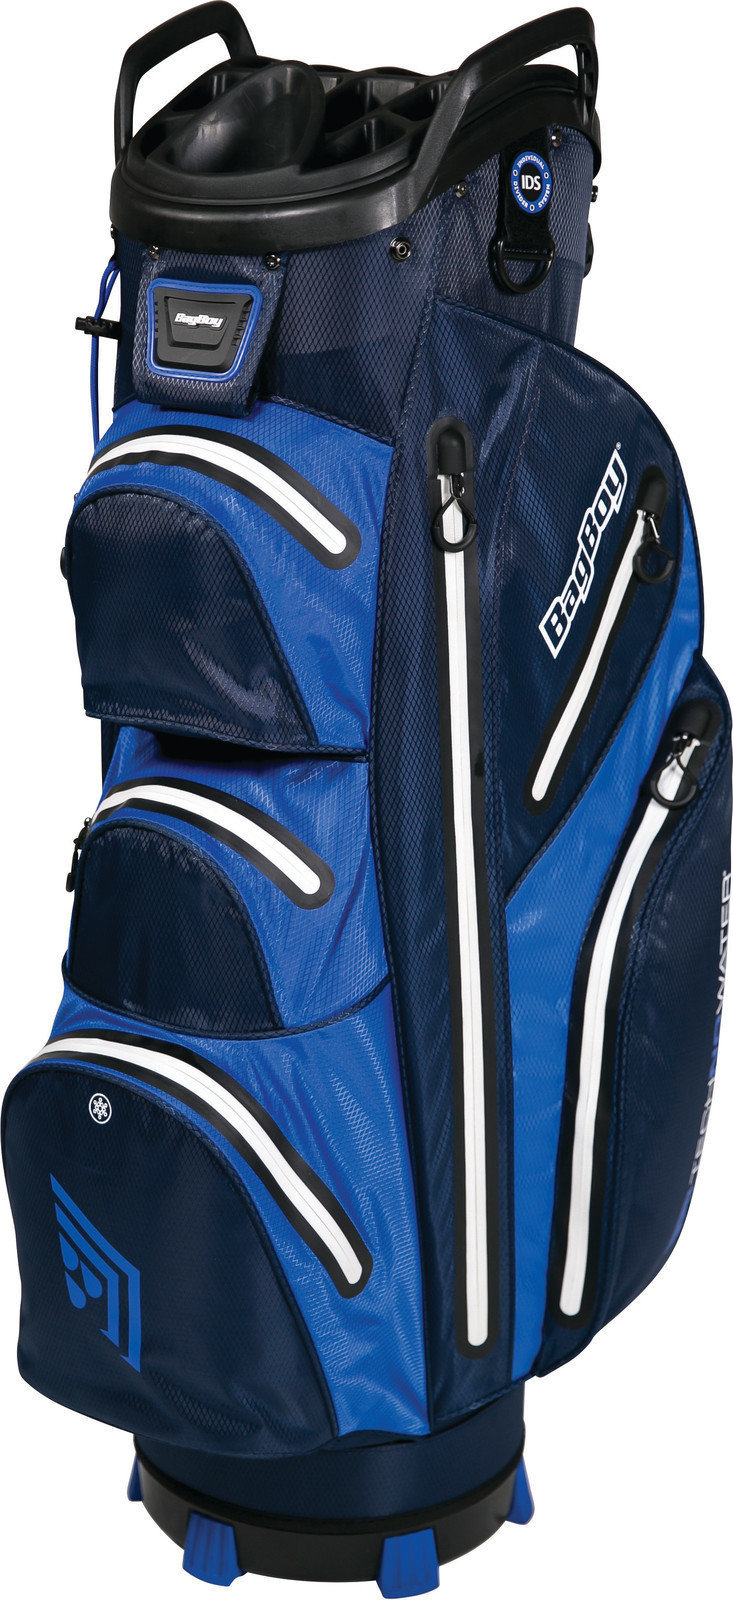 Golf Bag BagBoy Techno 302 Waterproof Navy/Royal/White Cart Bag